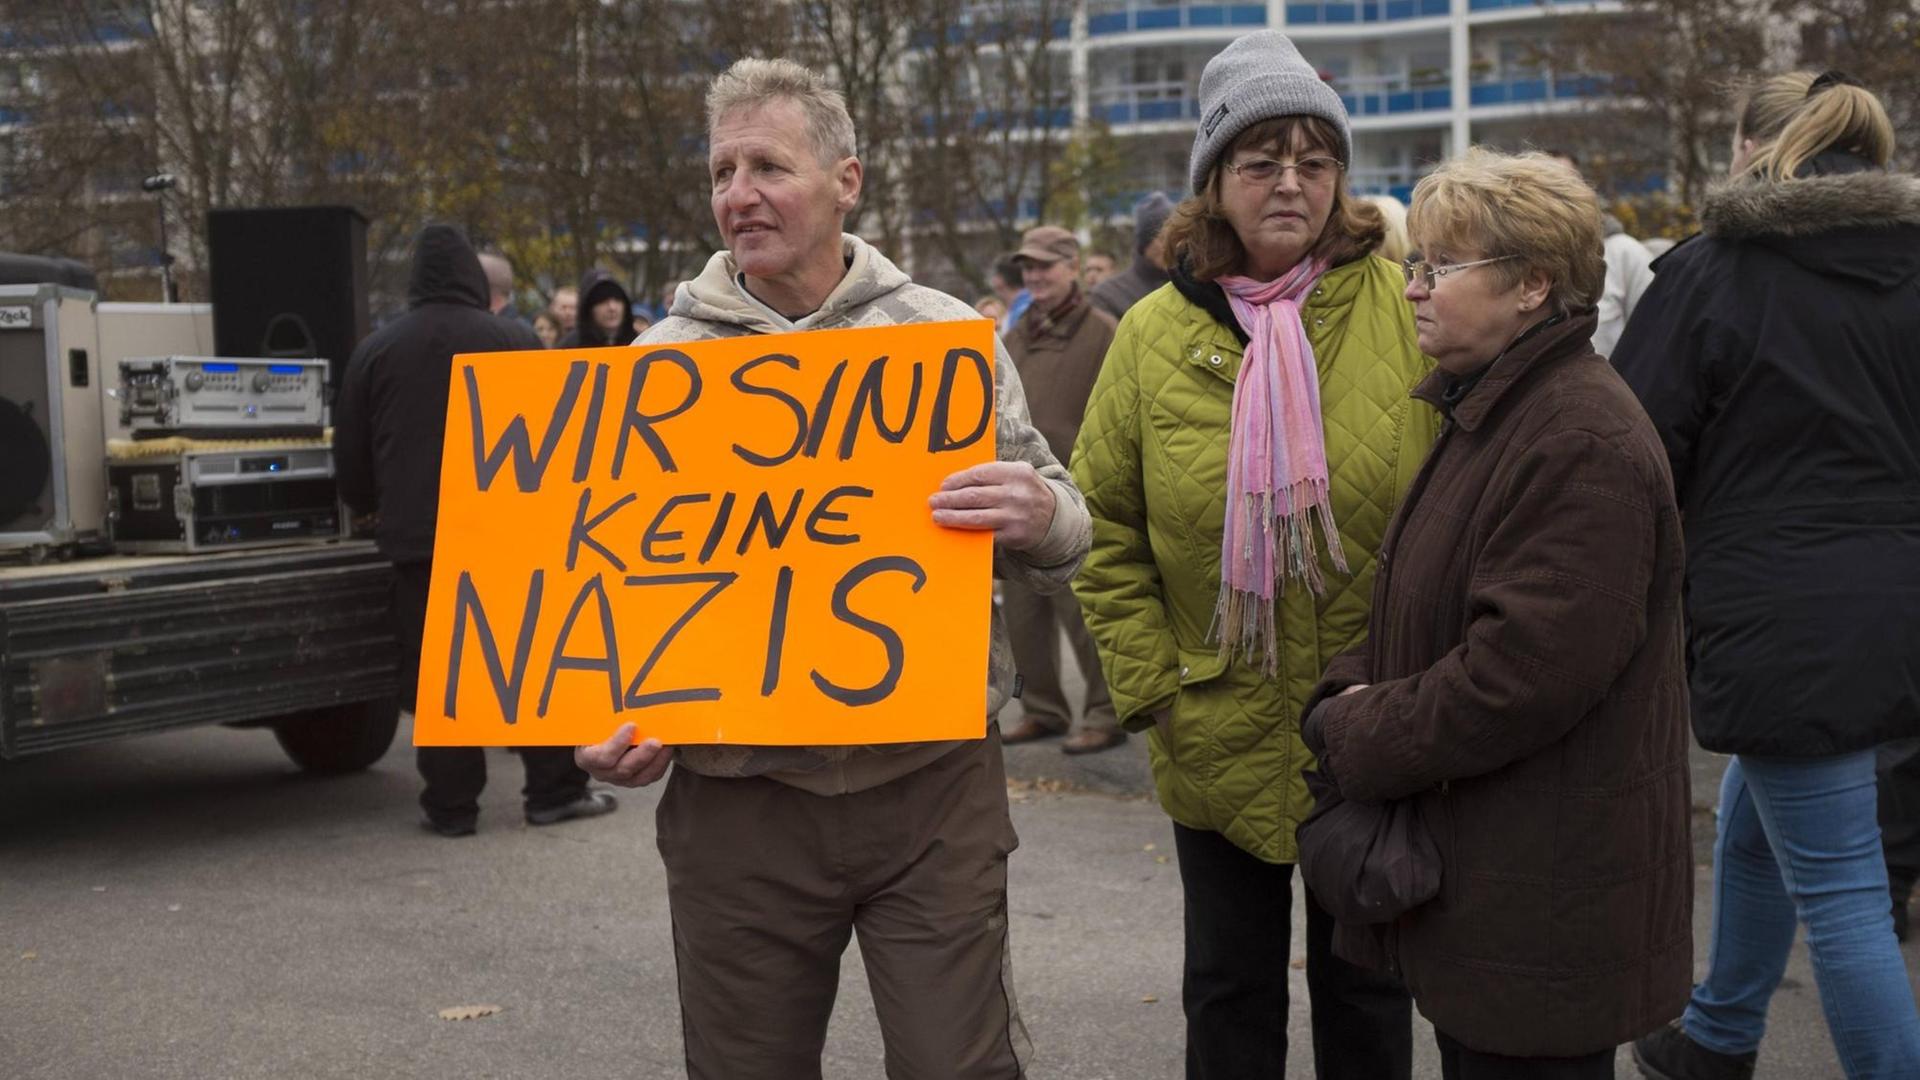 Auf dem Foto zu sehen sind drei ältere Personen auf einer Demonstration gegen die geplante Unterbringung von Asylbewerbern in Marzahn-Hellersdorf im Herbst 2014. Ein Mann trägt ein Schild mit der Aufschrift: "Wir sind keine Nazis". 